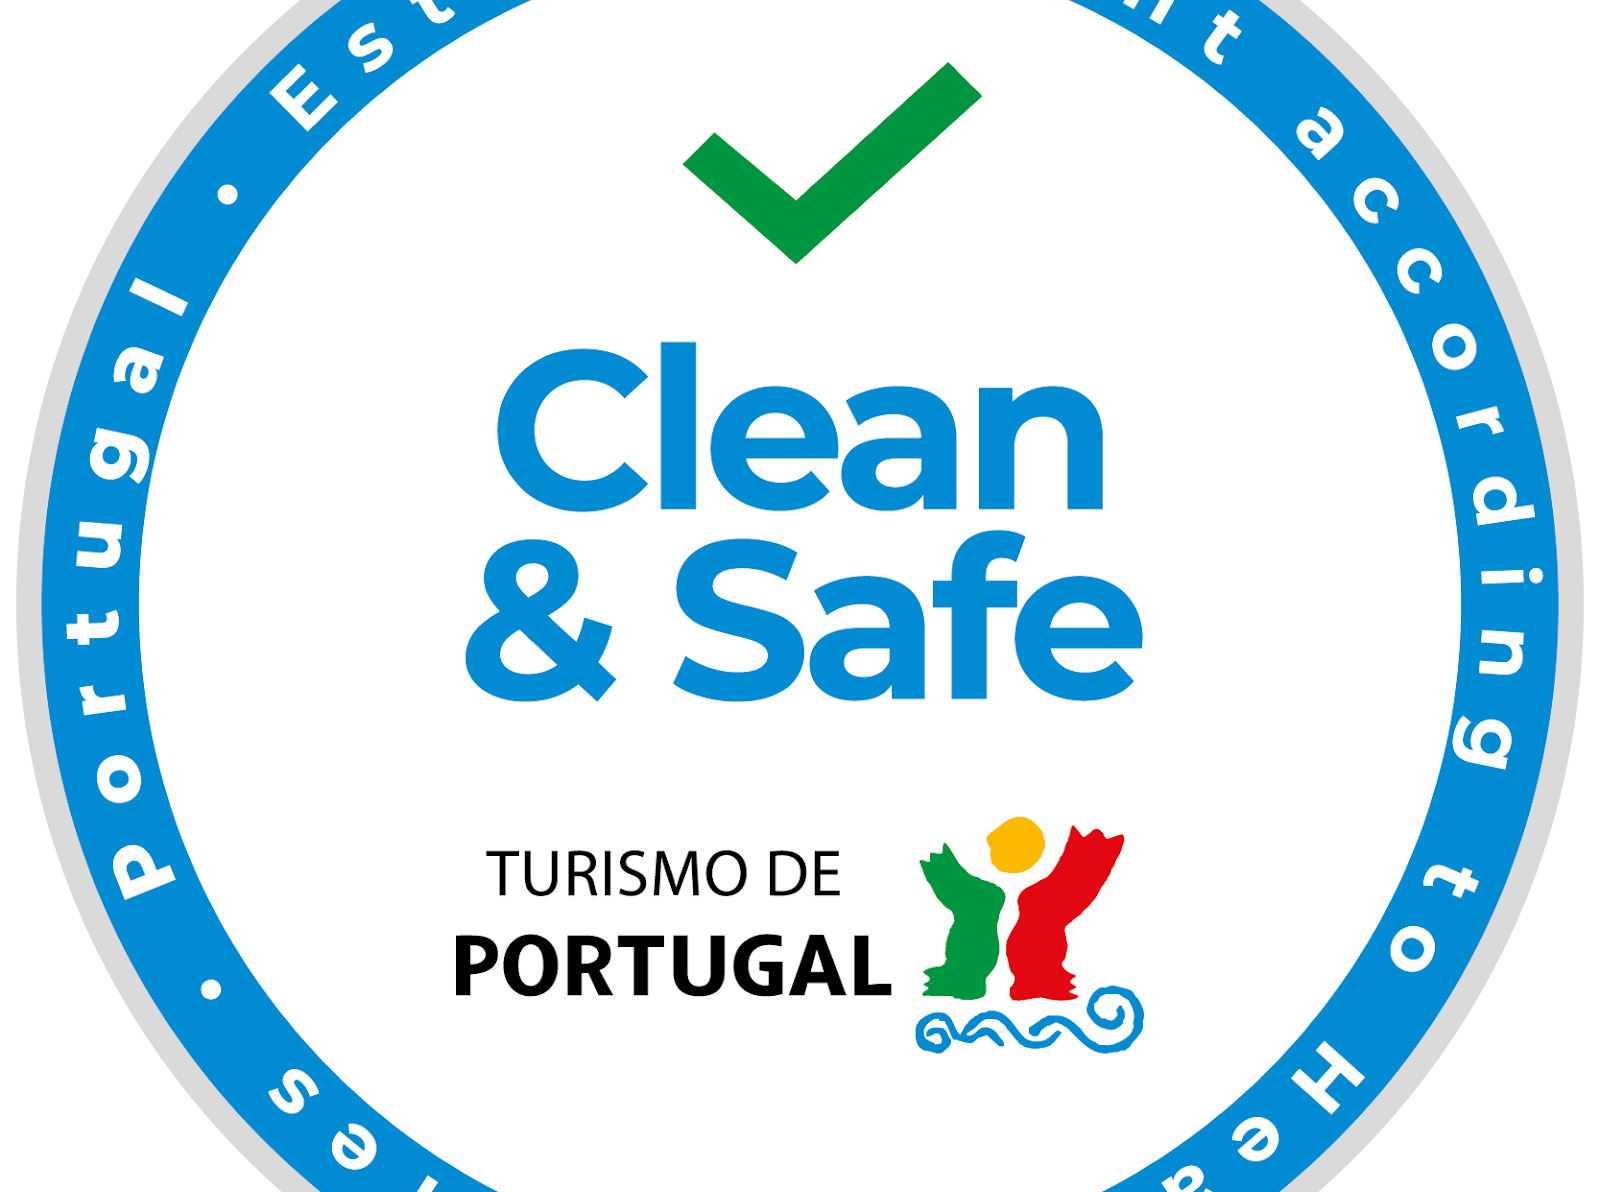 Algarve introduceert Clean & Safe-certificaat voor toerisme